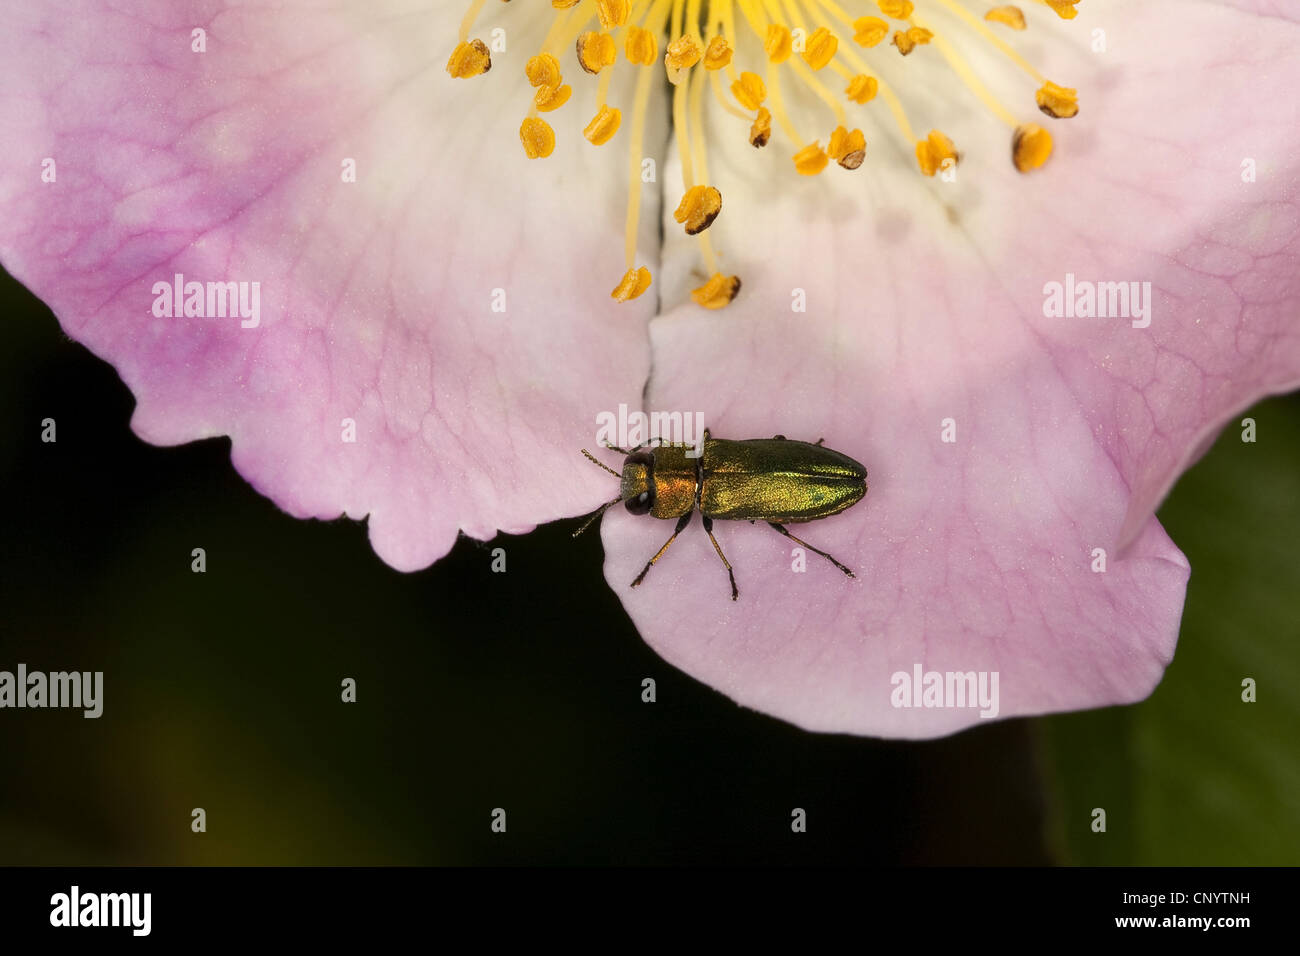 Jewel beetle, Metallic wood-boring beetle (Anthaxia nitidula), male sitting on a flower, Germany Stock Photo